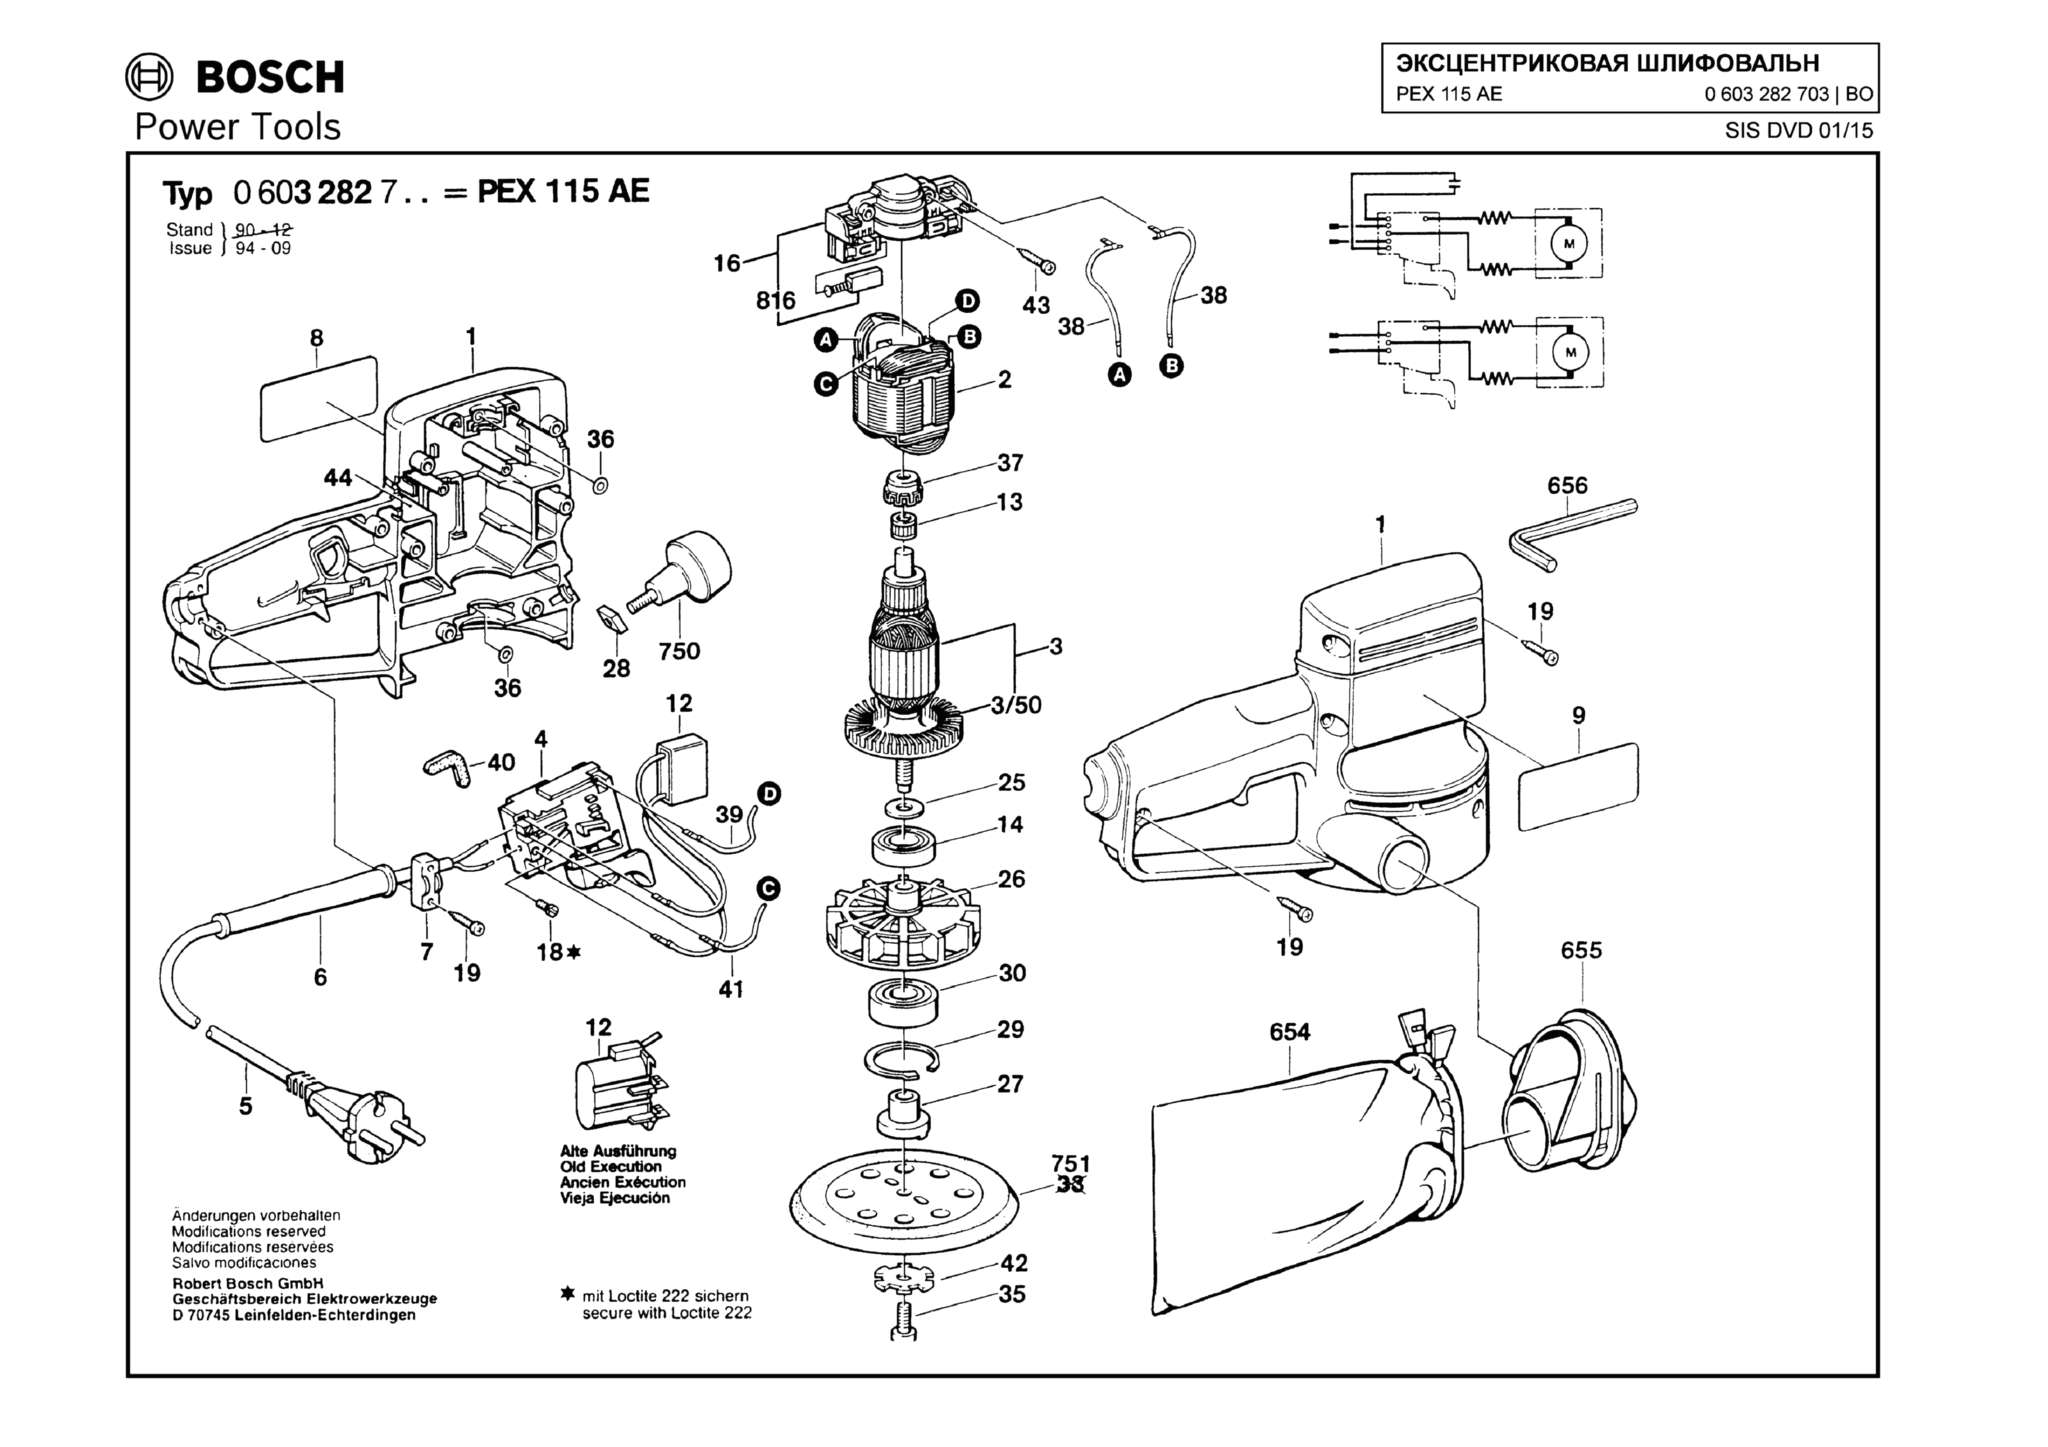 Запчасти, схема и деталировка Bosch PEX 115 AE (ТИП 0603282703)